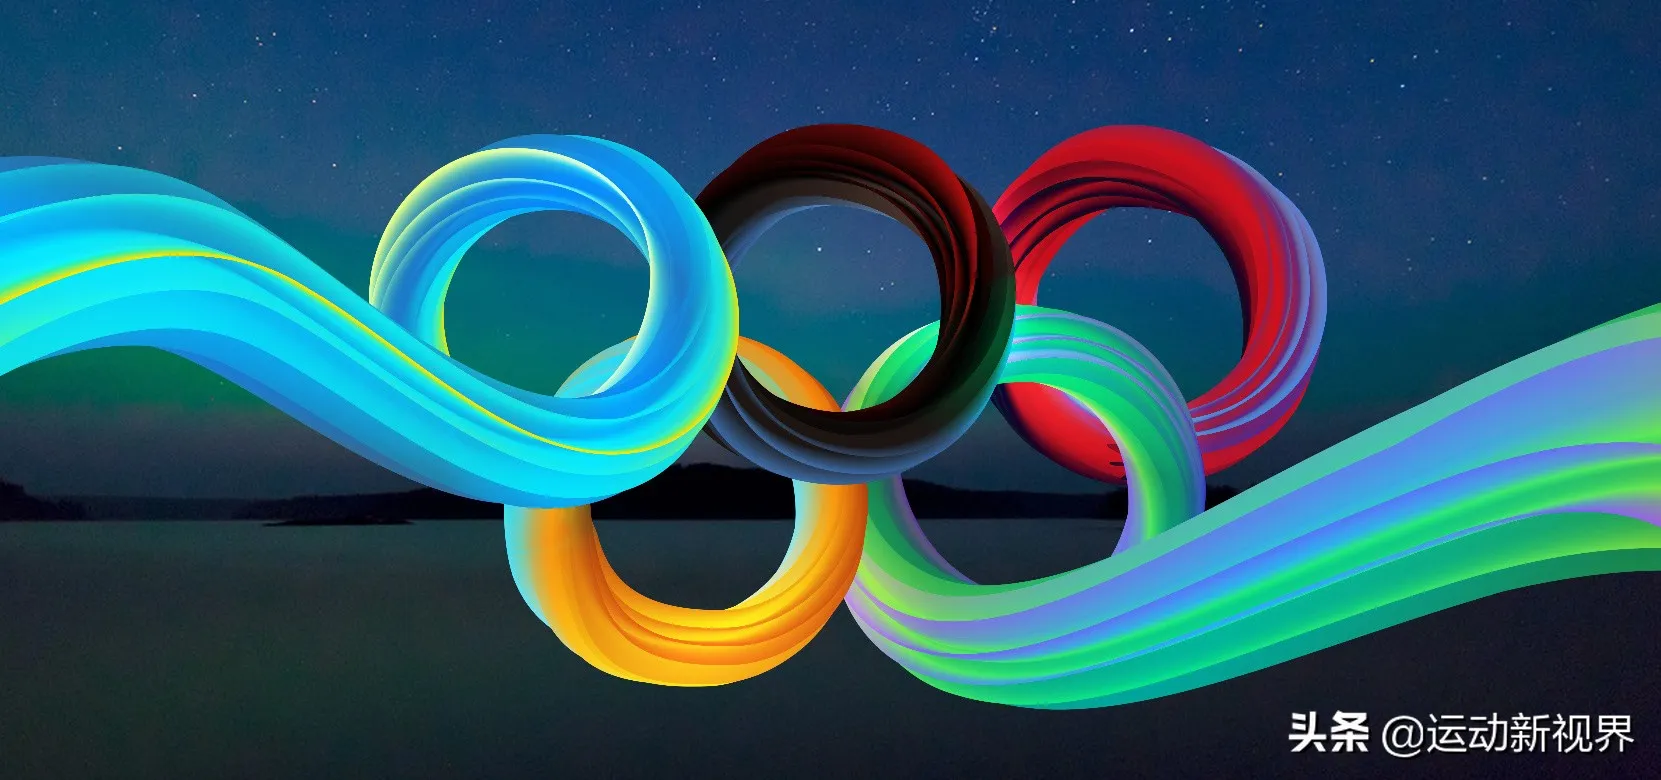 奥运五环的颜色及寓意 | 奥运五环代表哪五大洲